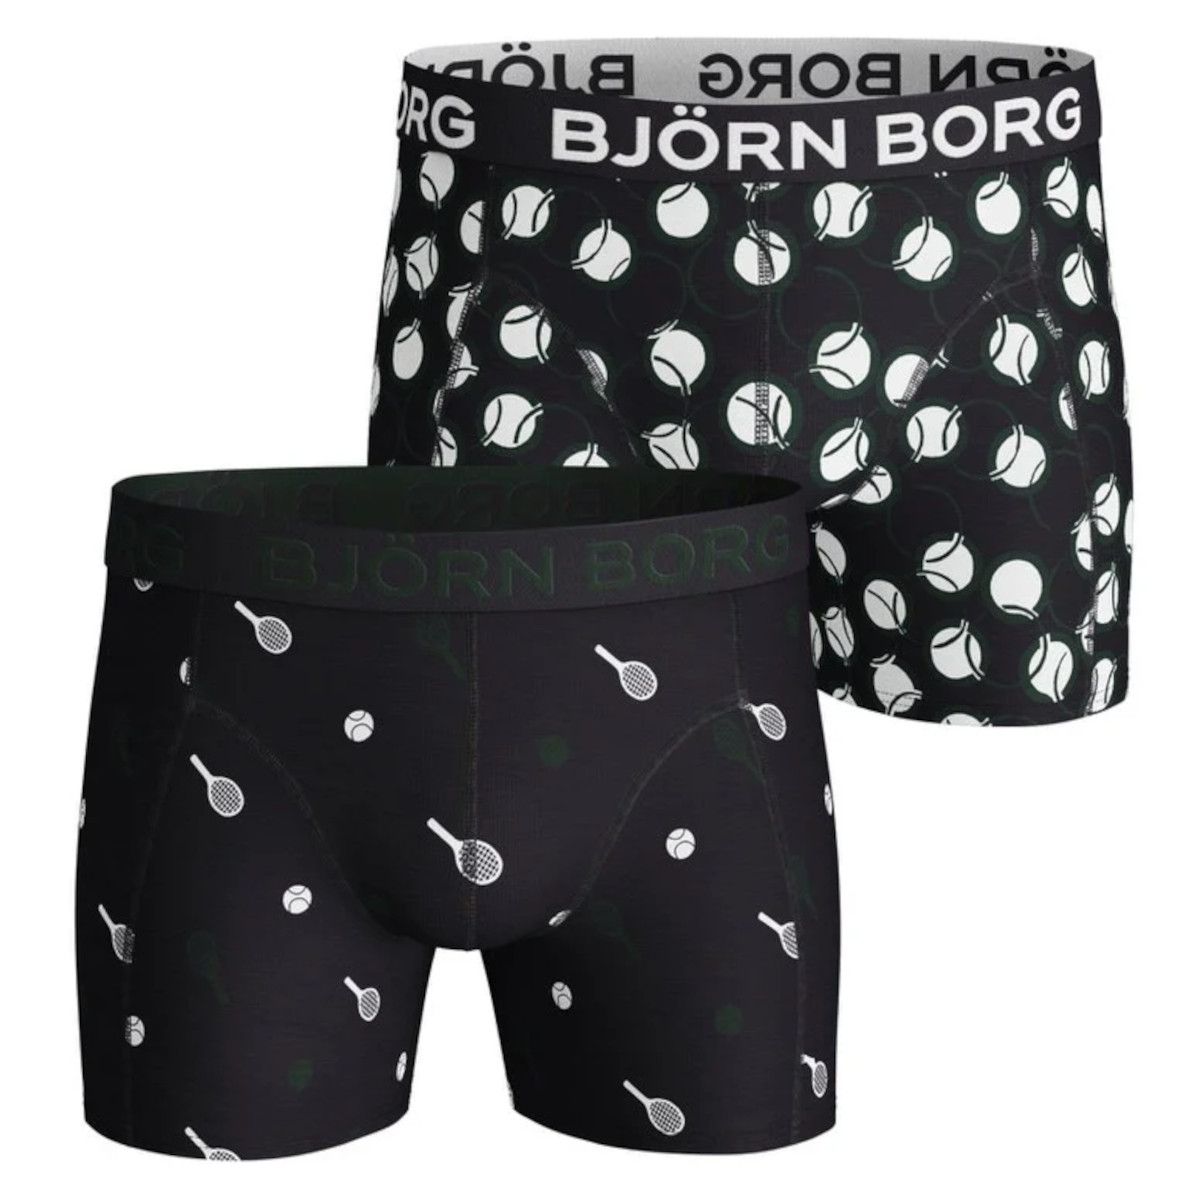 lading Saai lamp Bjorn Borg Tennis Match 2 Pack Men's Boxer 2111-1069-72731